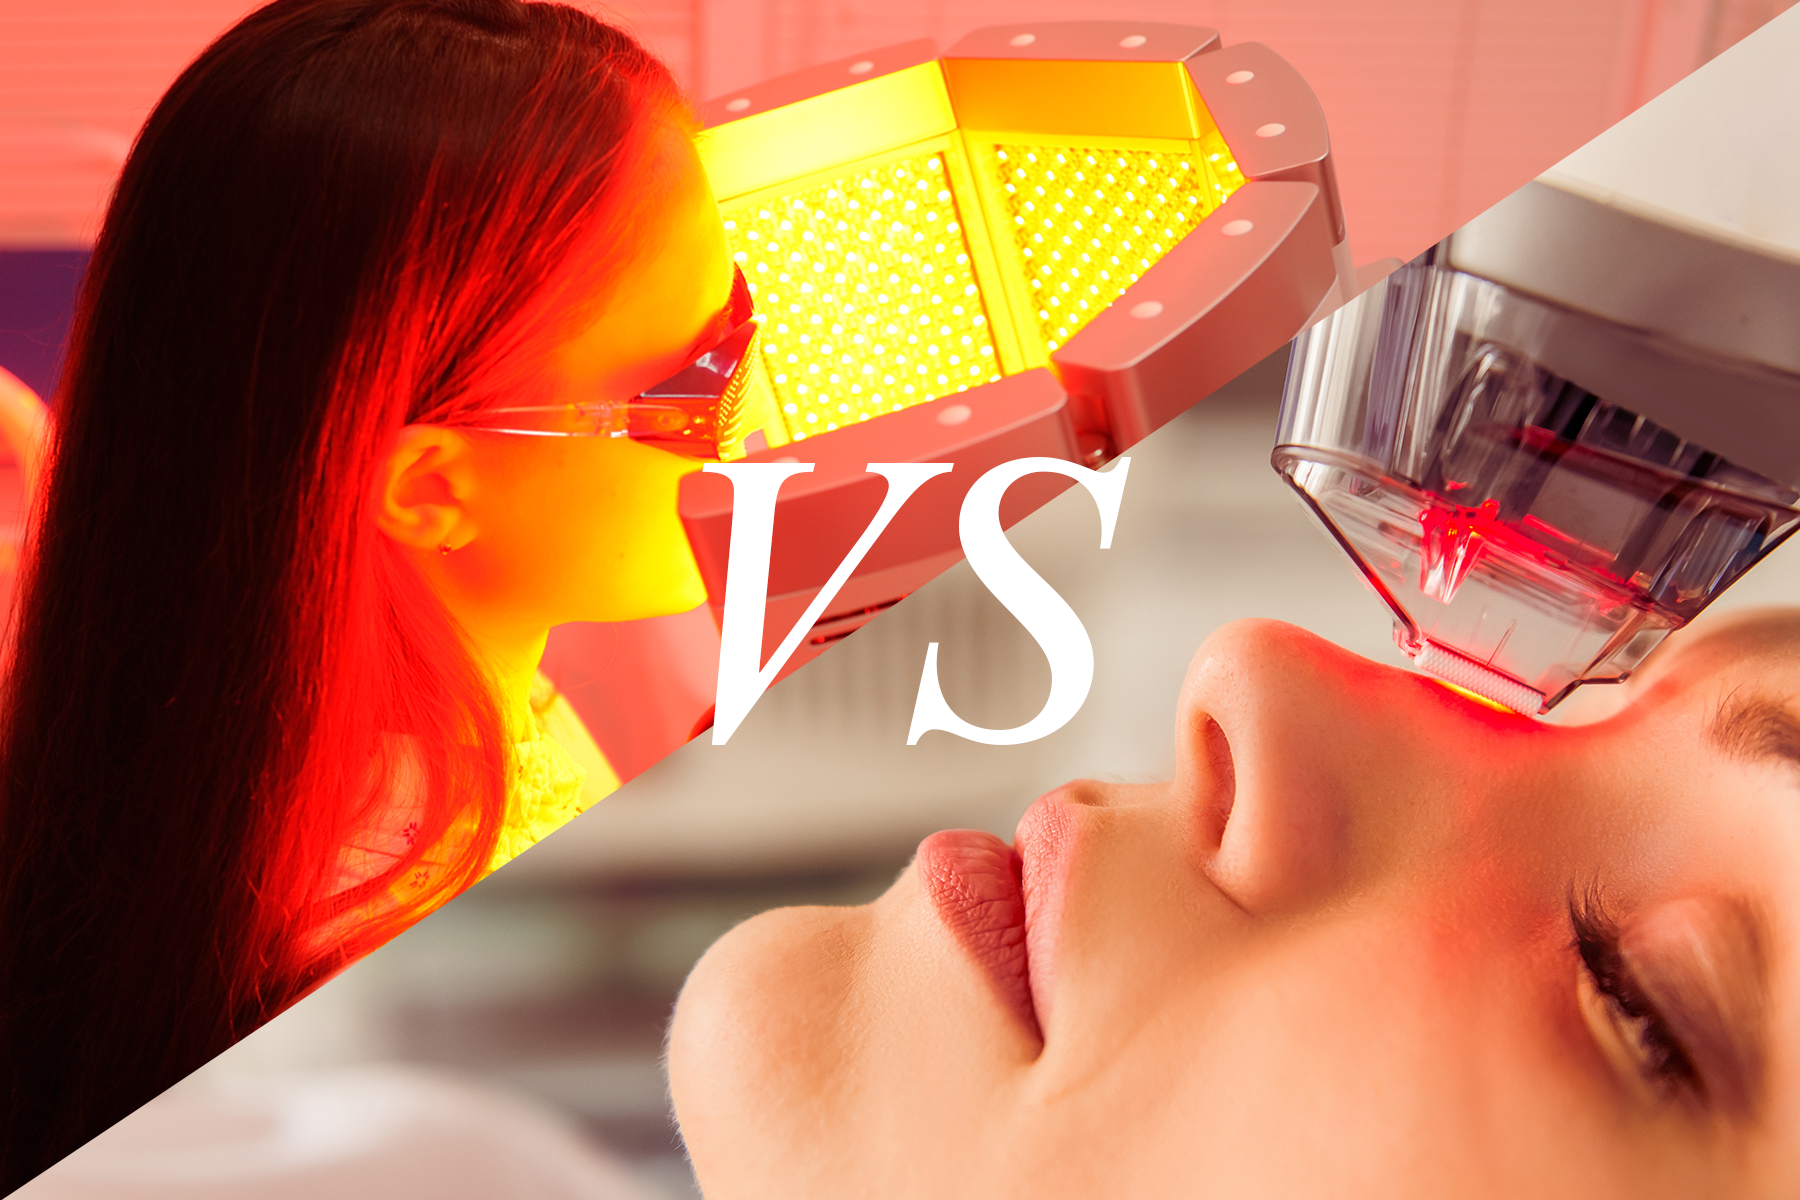 LED Skincare Light vs Facials Dr. Dennis Gross